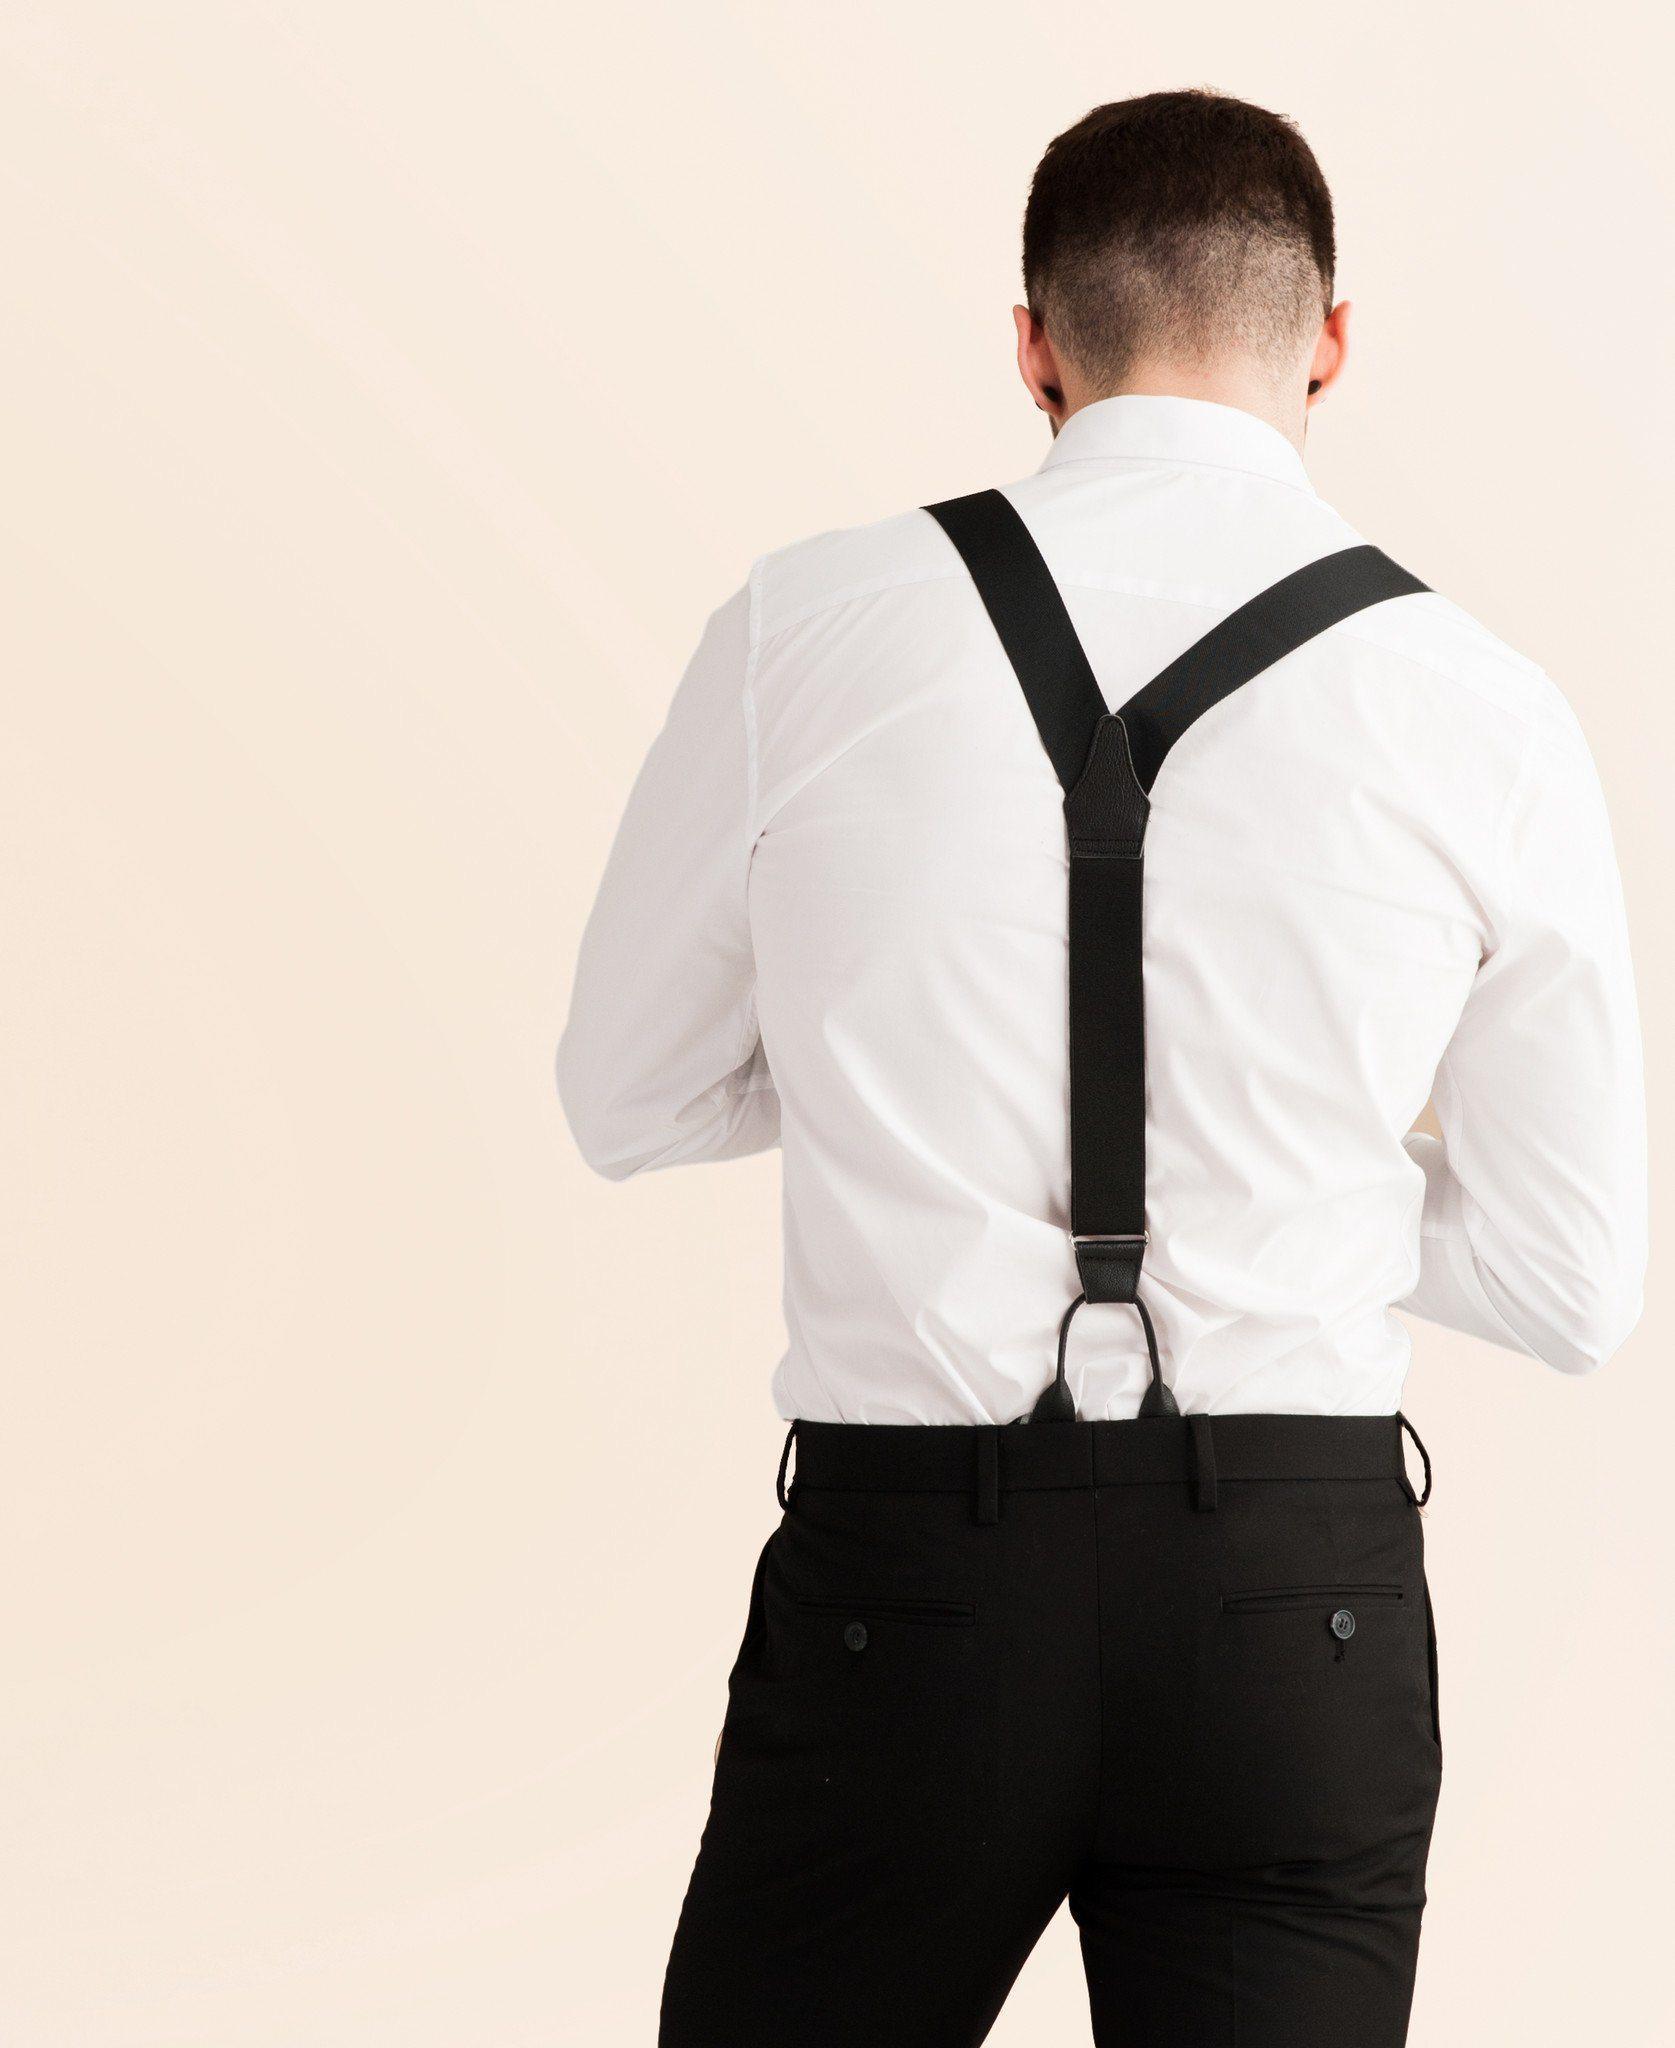 Back to Black - Formal Black Suspenders - JJ Suspenders